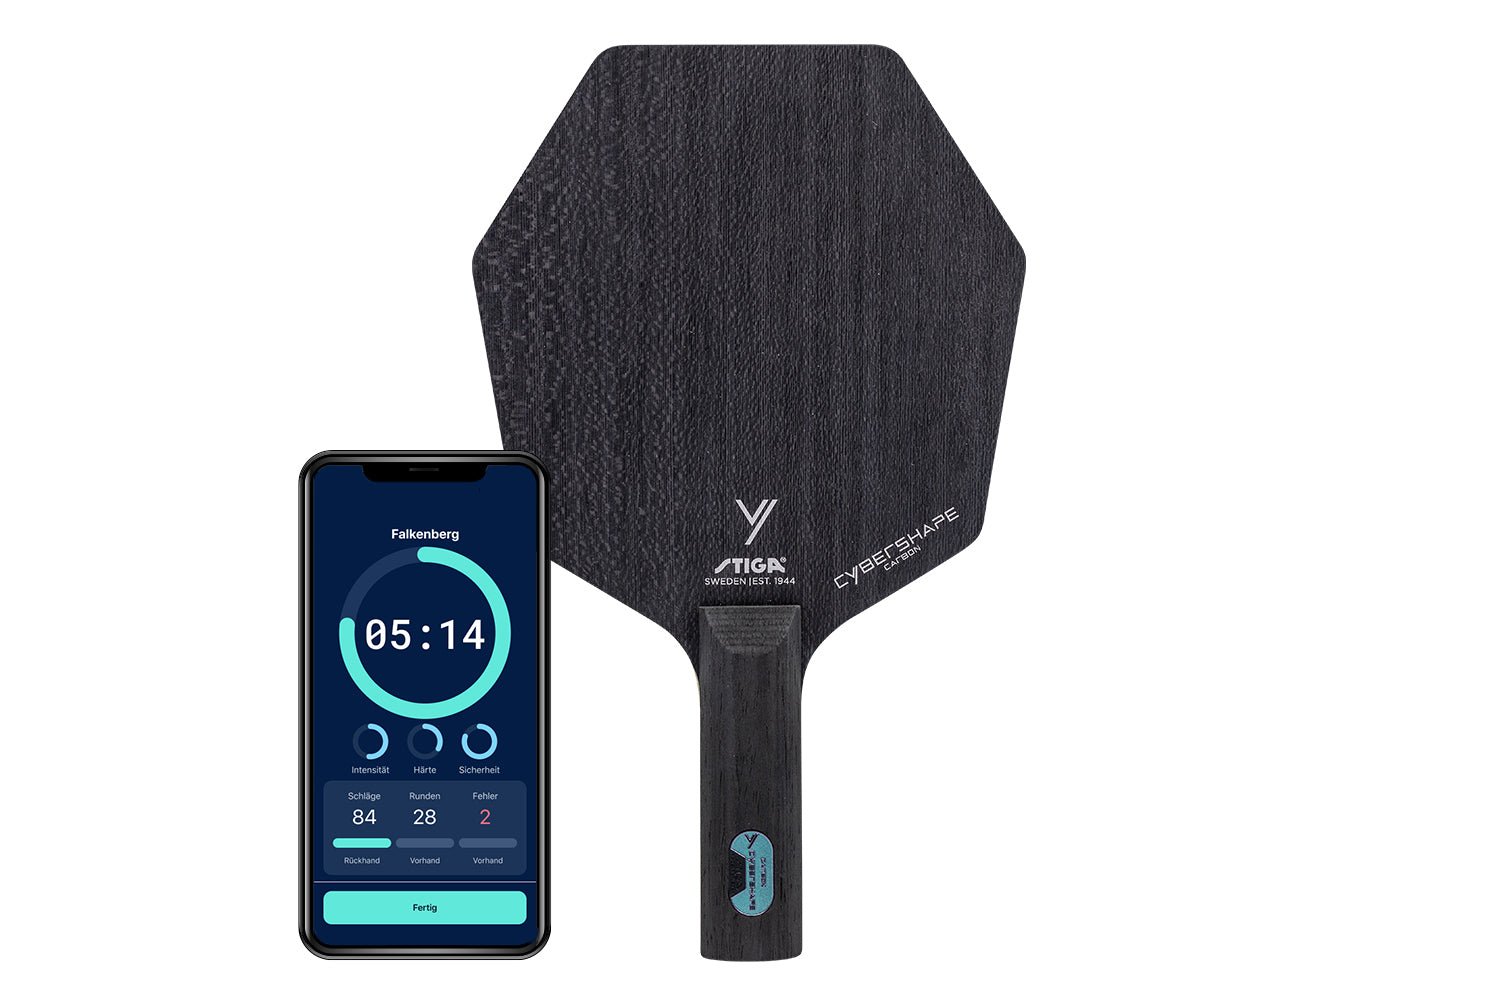 Stiga Cybershape Carbon Tischtennisschläger mit geradem Griff und Smartphone zeigt Daten des Schlägers vor weißem Hintergrund